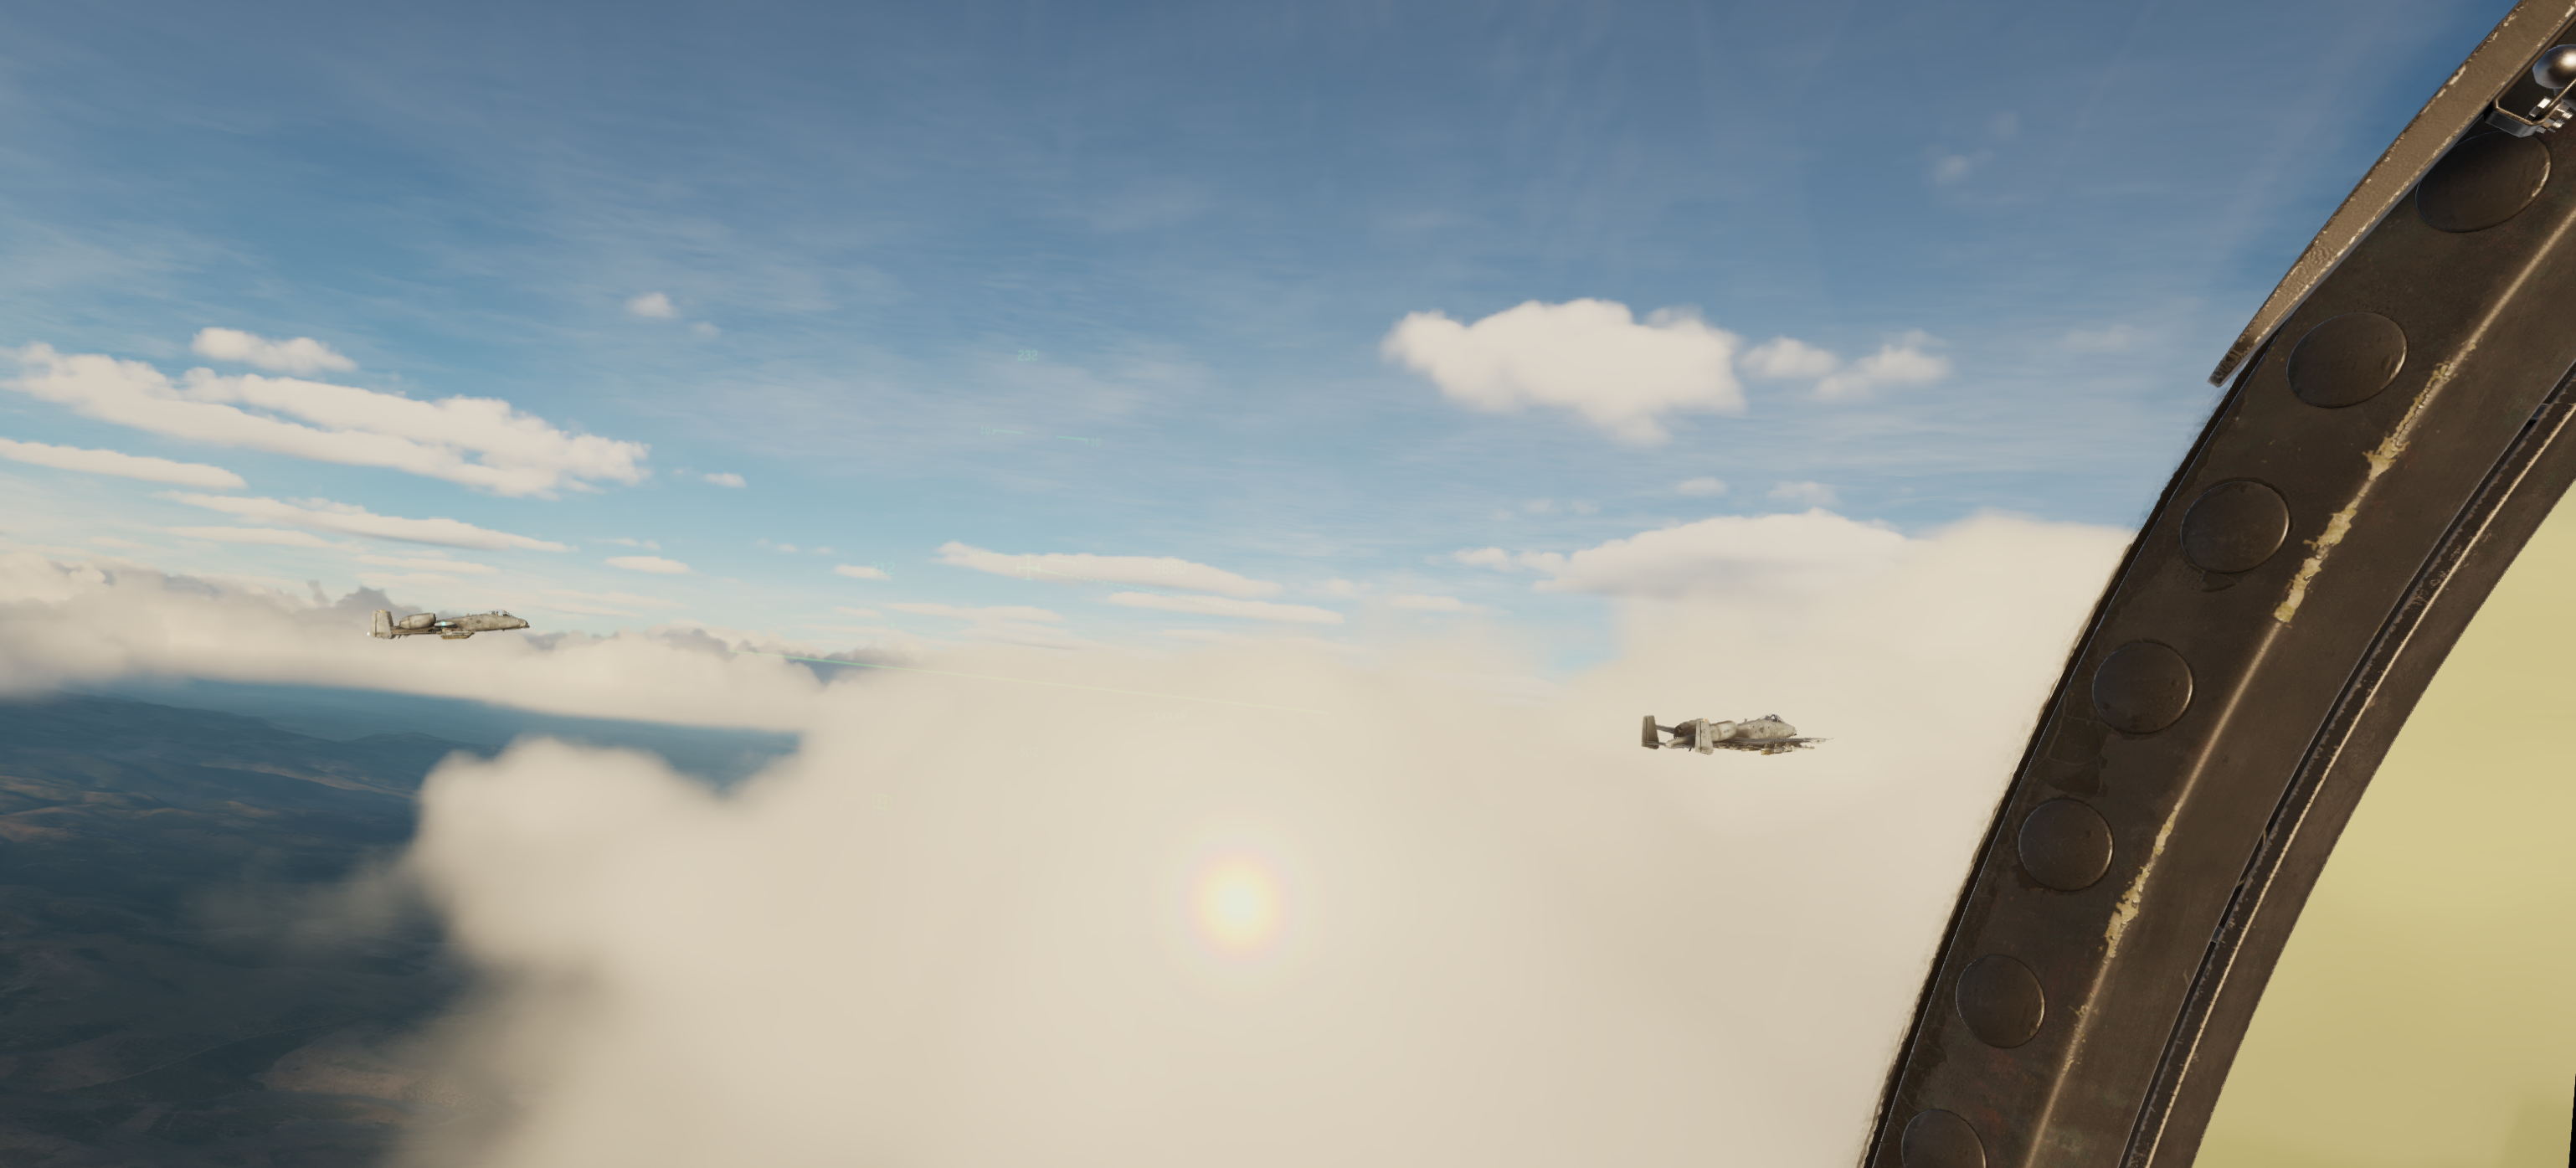 Jedi1 in the clouds